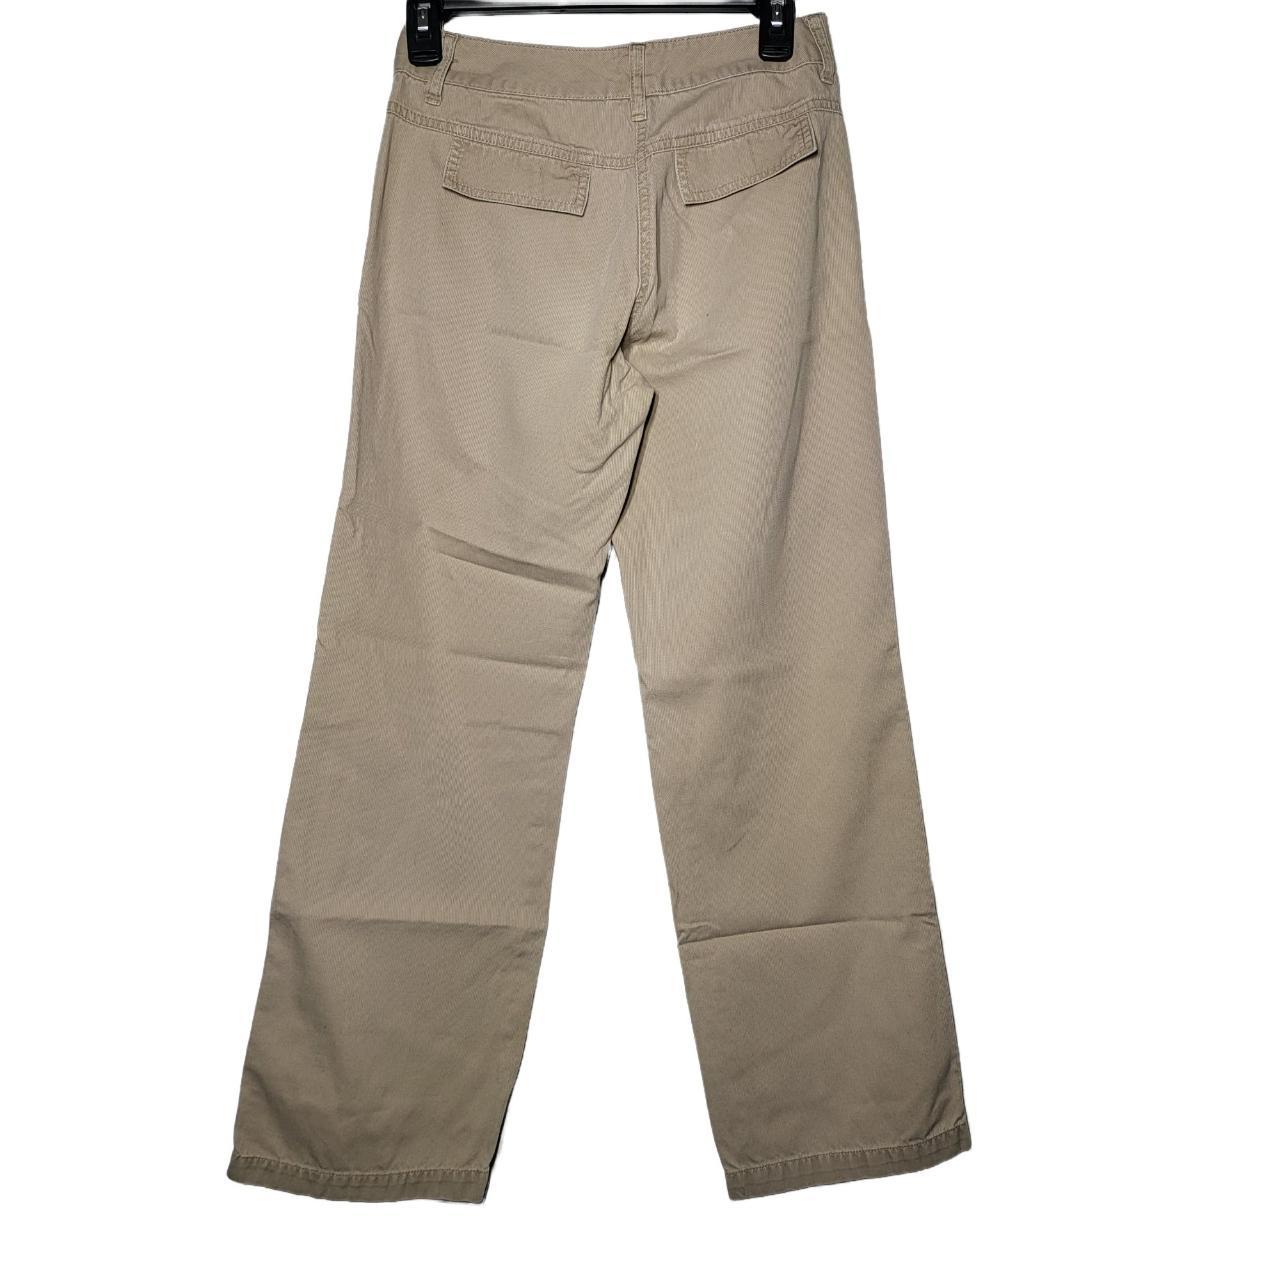 B. Moss Women's Corduroy Tan Pants Size 2... - Depop